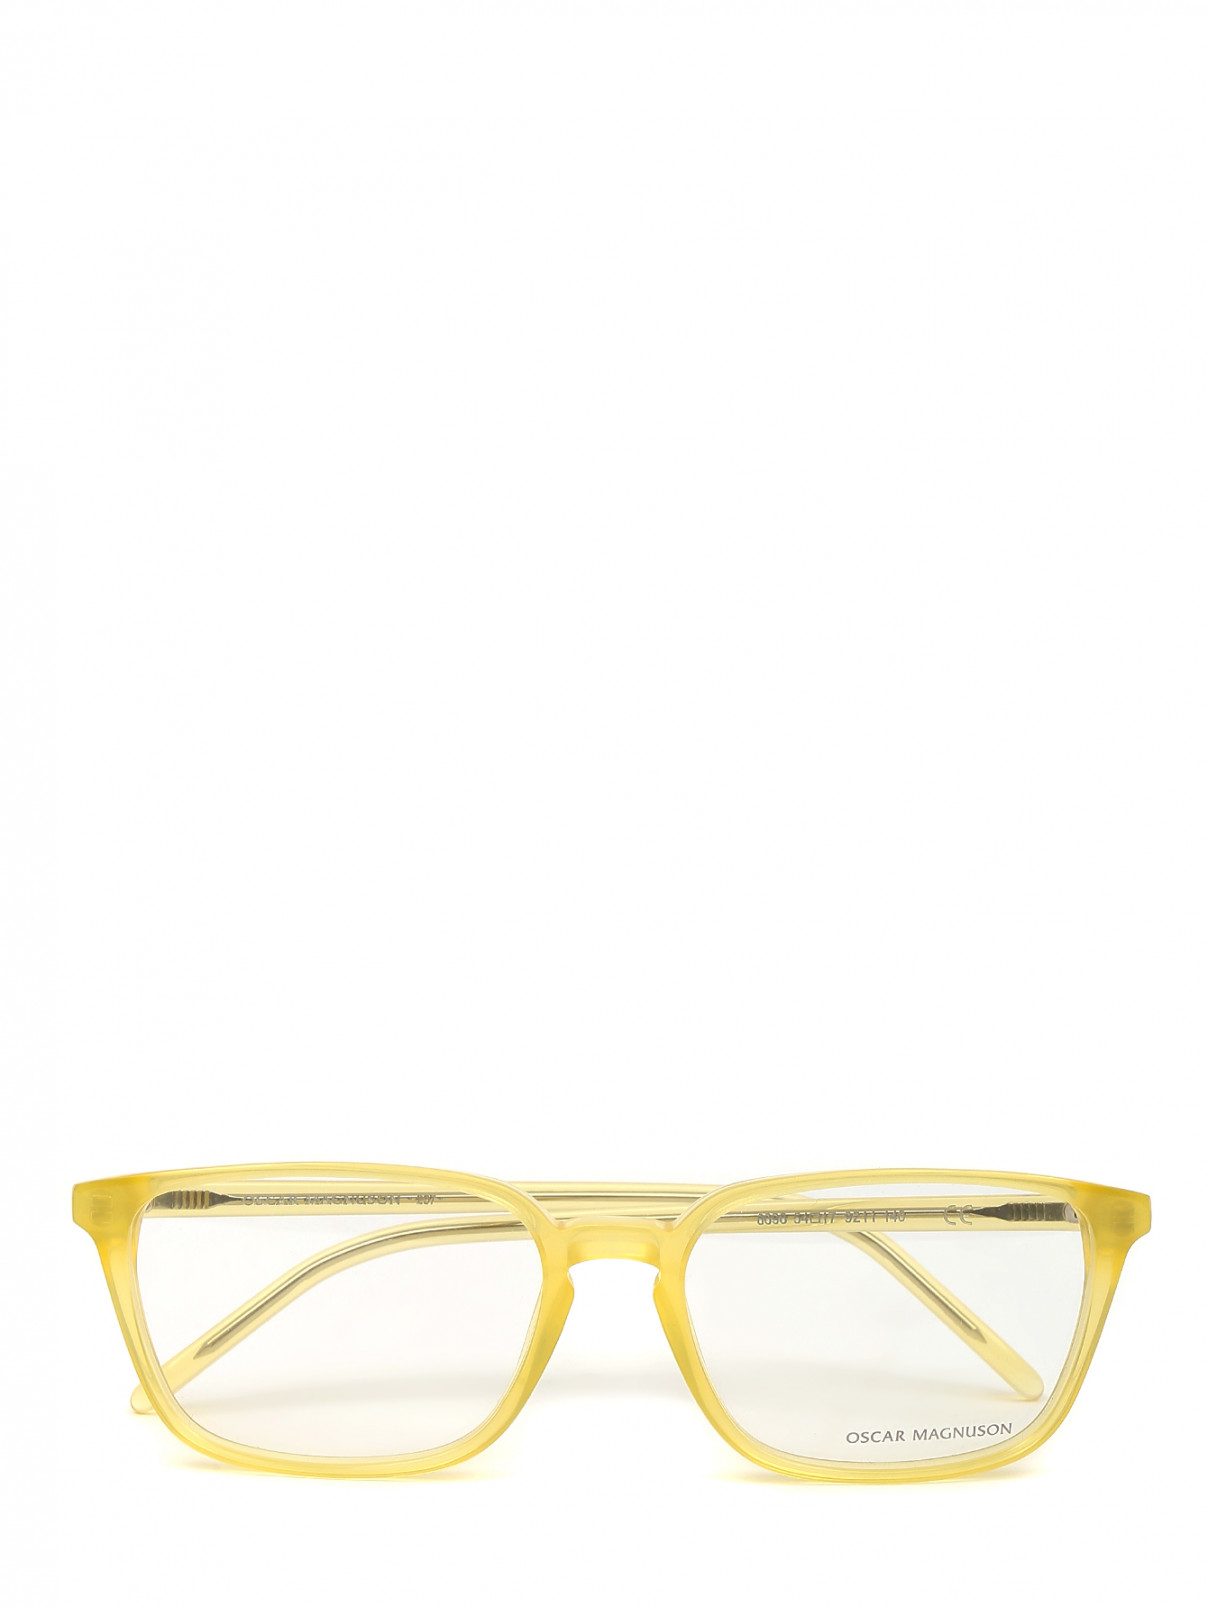 Прямоугольная оправа с прозрачными стеклами Oscar Magnuson  –  Общий вид  – Цвет:  Желтый